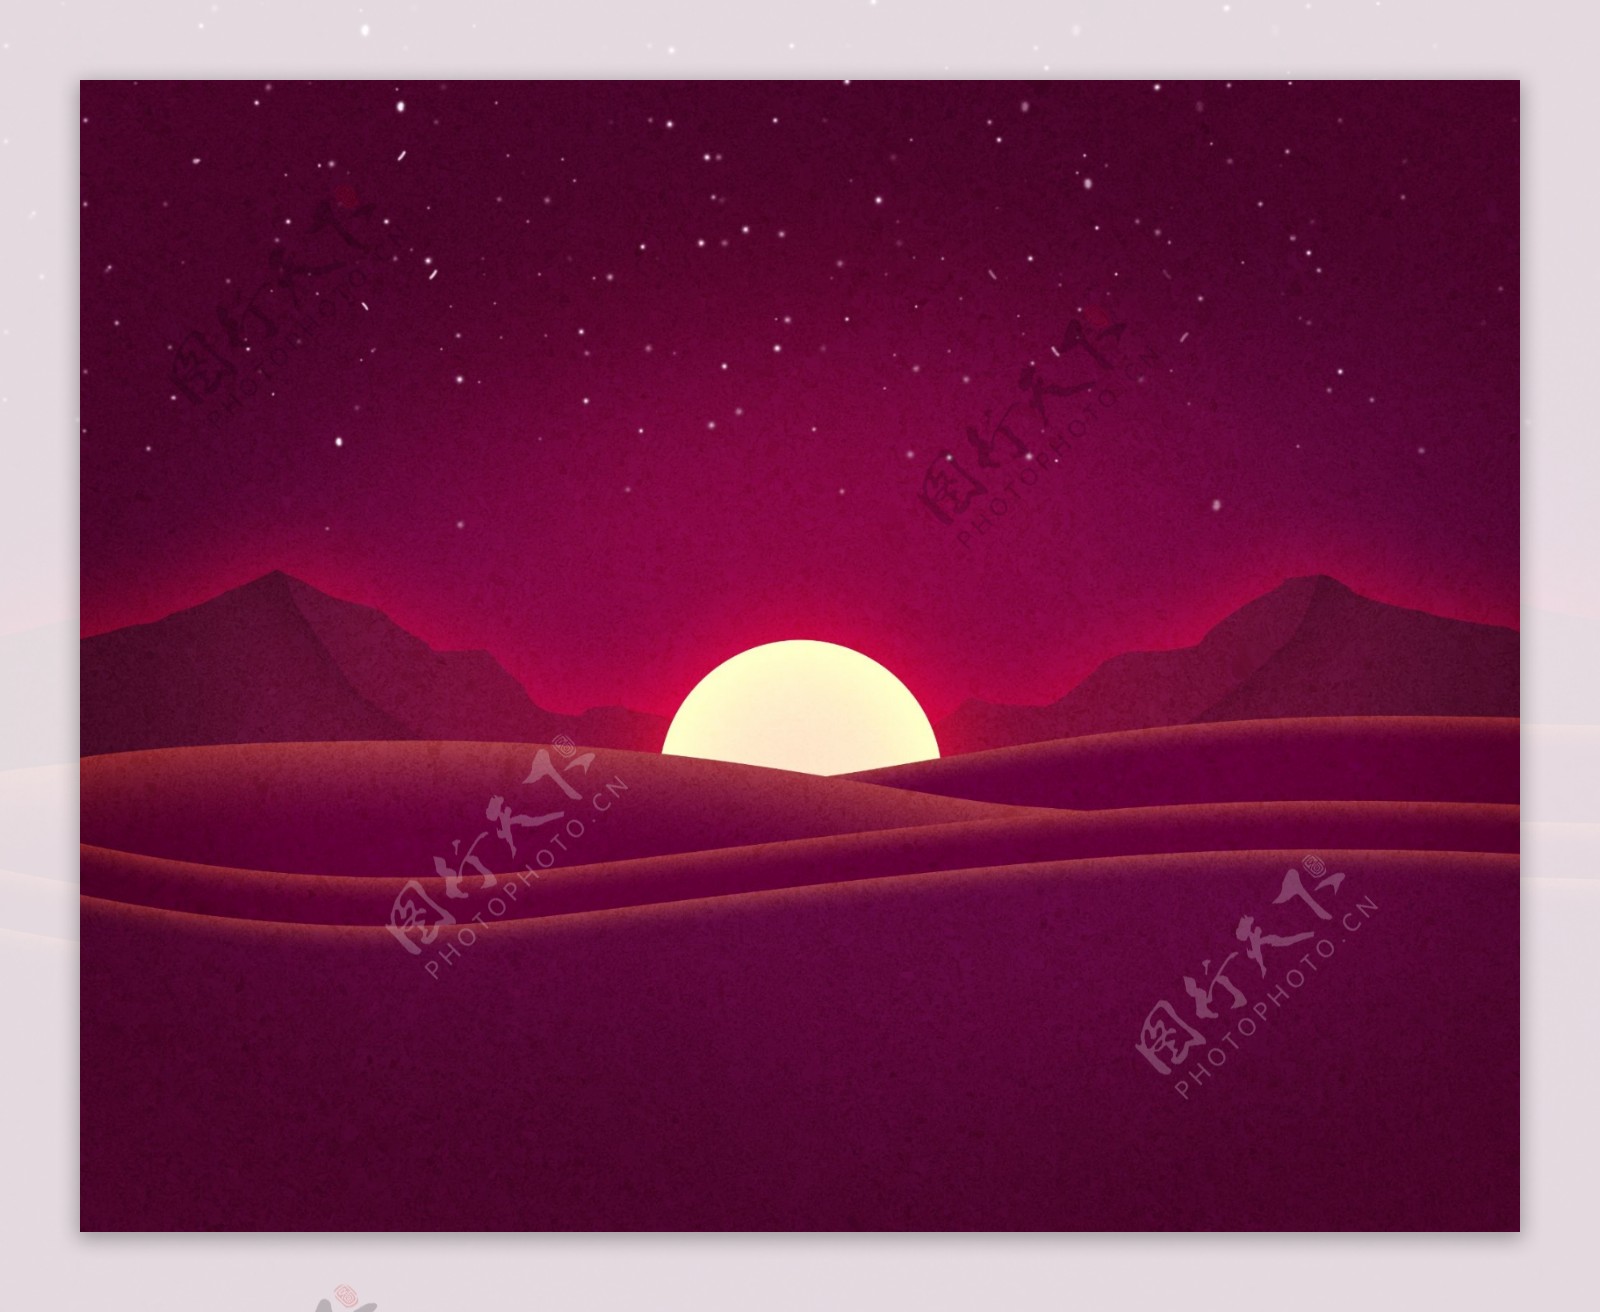 唯美沙漠日落插画